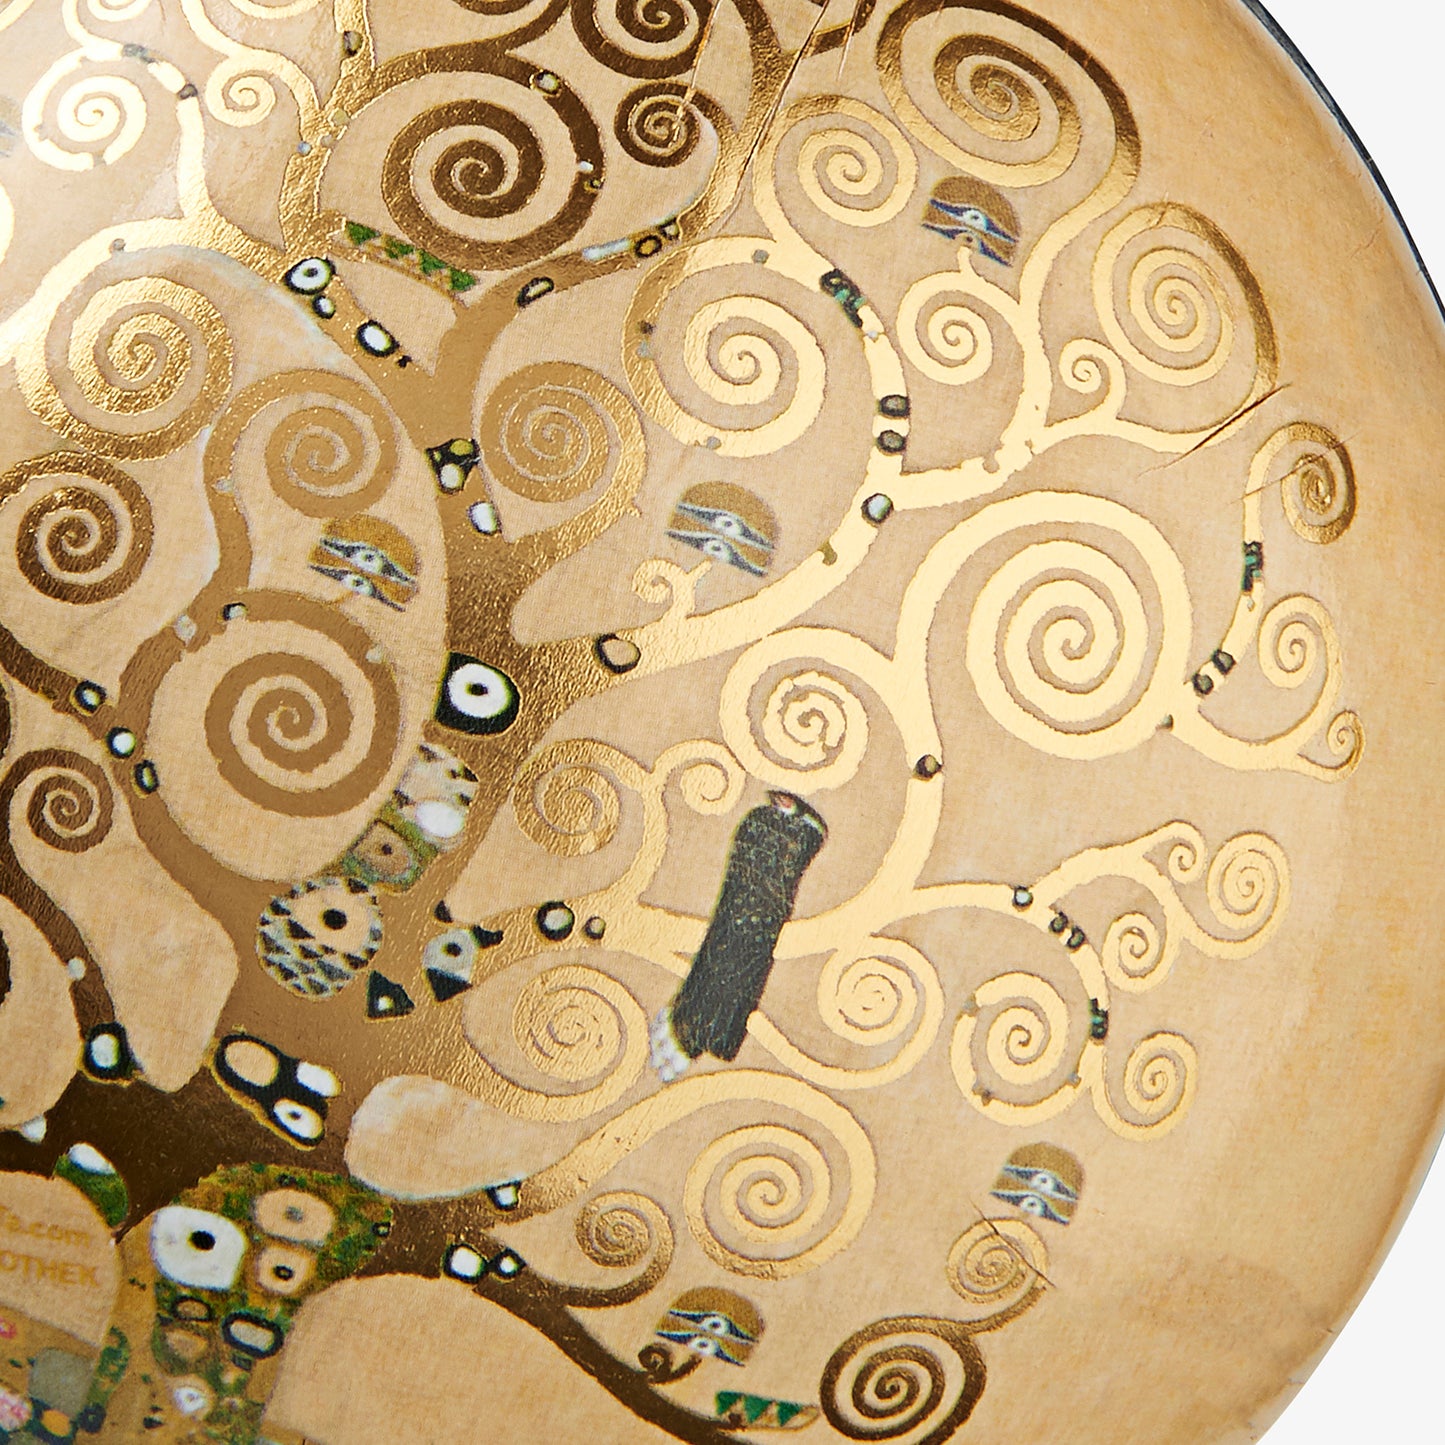 Geschenkkugel - Gustav Klimt, Der Lebensbaum